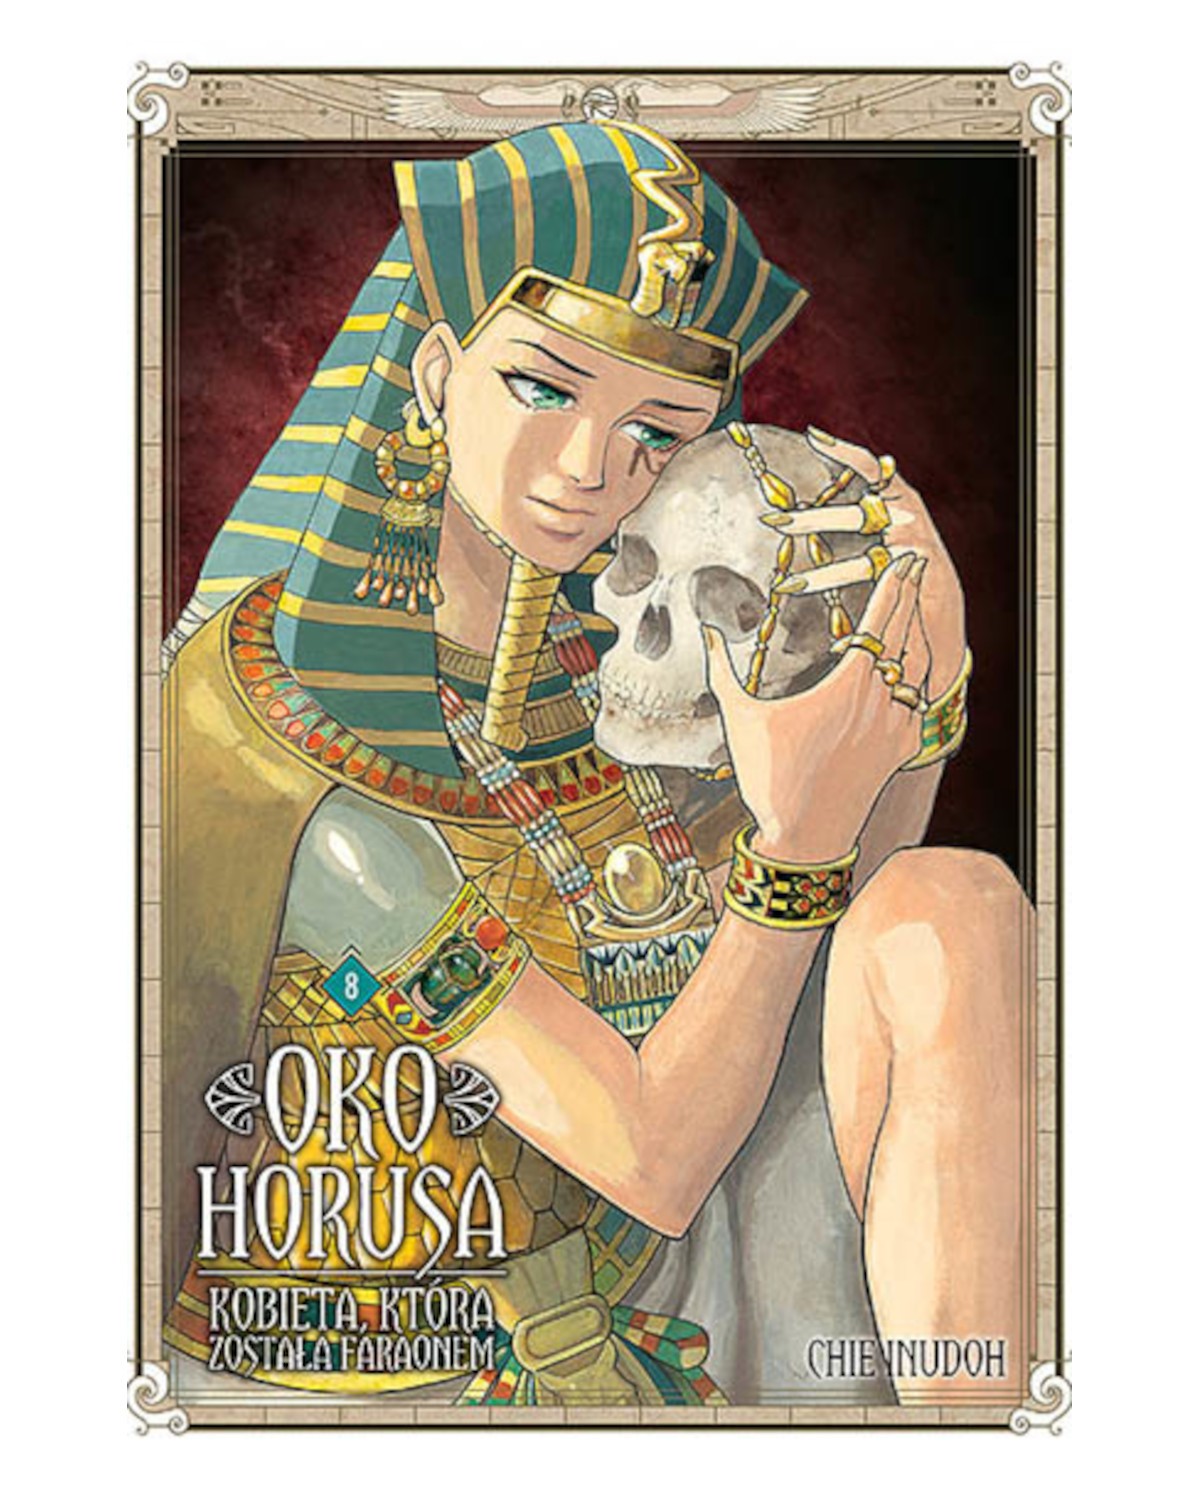 Sklep Anime Manga - Oko Horusa. Kobieta, która została faraonem - Tom 8